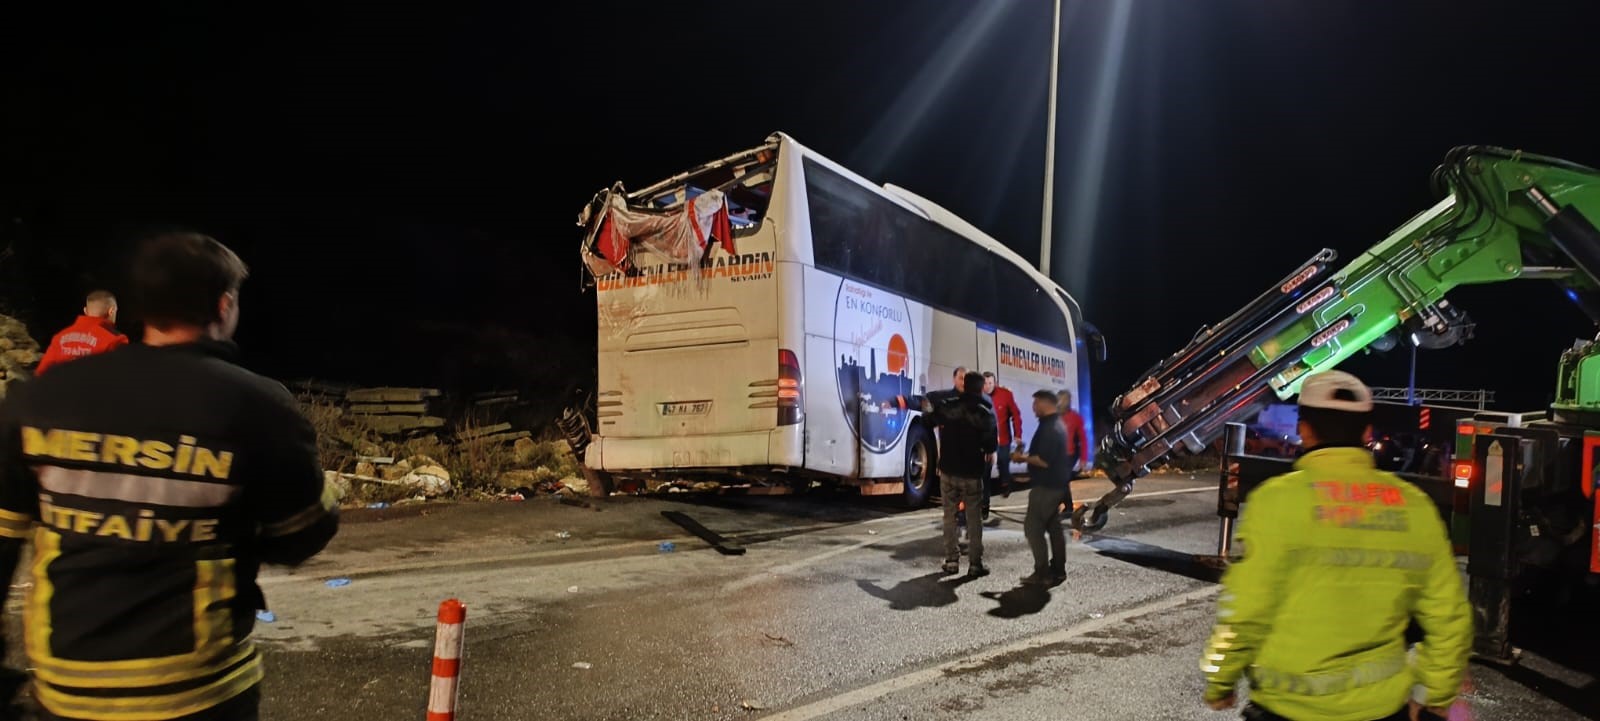 Mersin’de Katliam Gibi Kaza Yolcu Otobüsü Devrildi, 9 Ölü, 28 Yaralı (4)